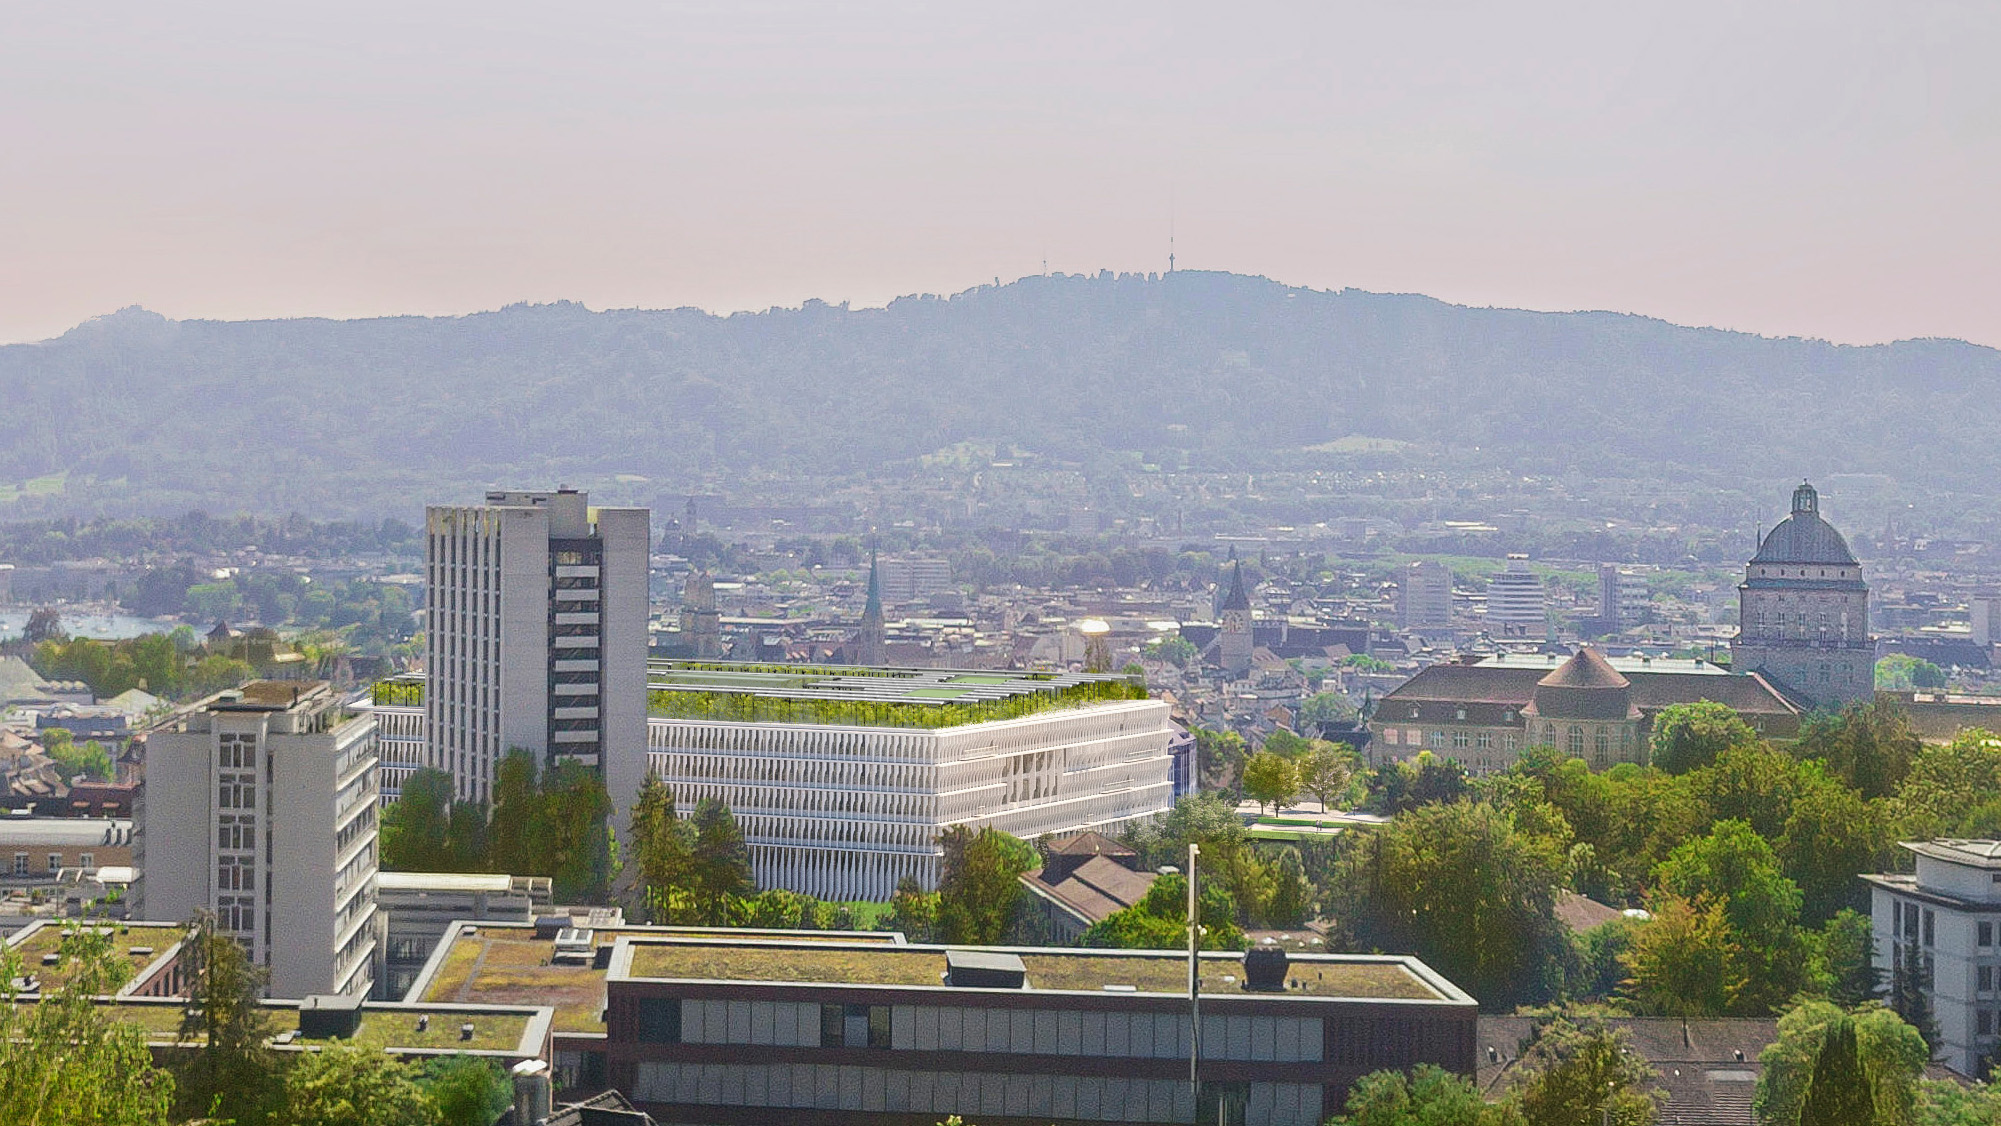 Spatenstich für das Functional Genomics Center Zurich am Campus Irchel der Universität Zürich